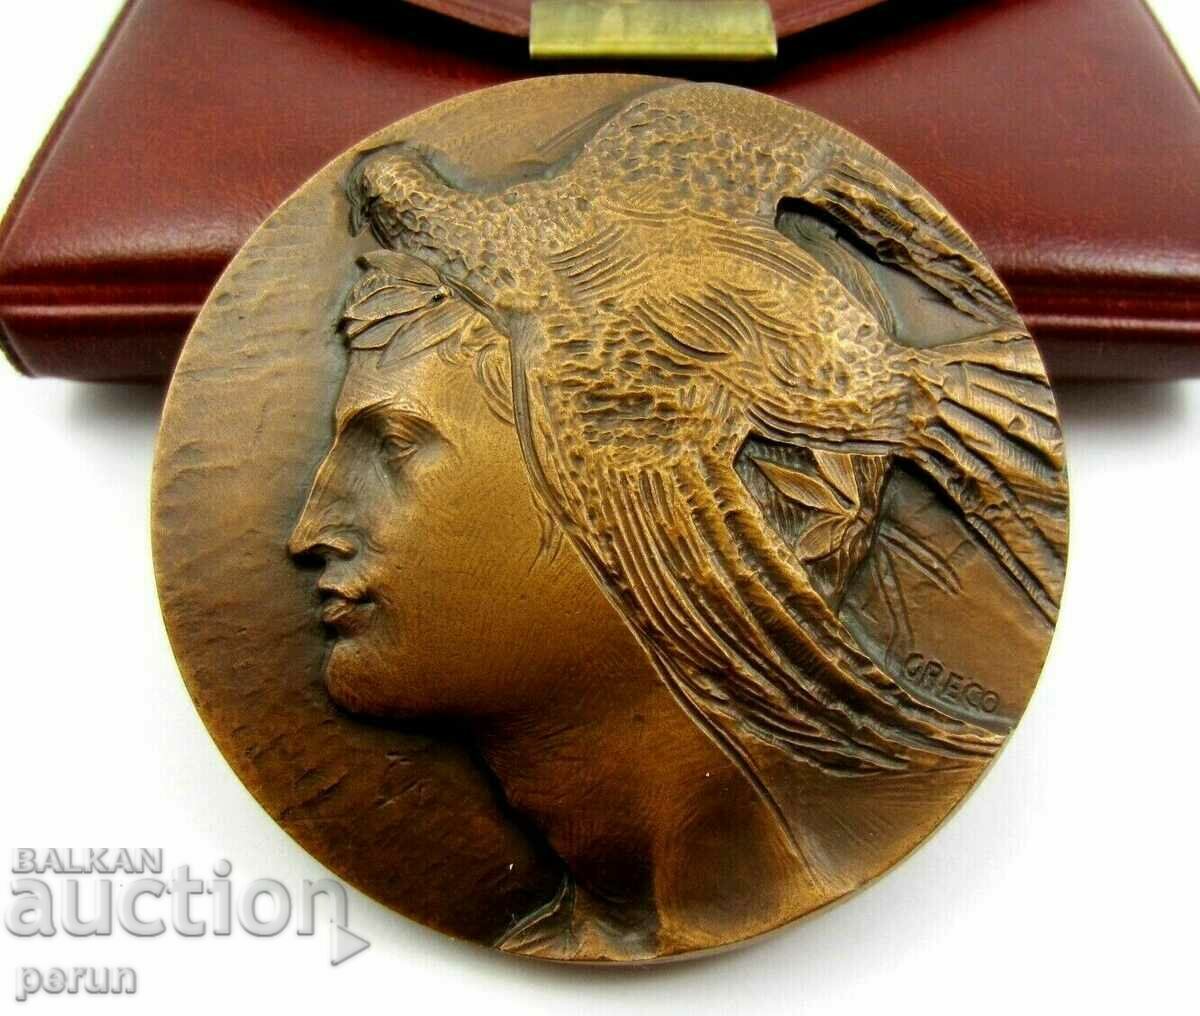 Ιταλία - Αναμνηστικό Χάλκινο Μετάλλιο - 2000. Arc de Triomphe Av